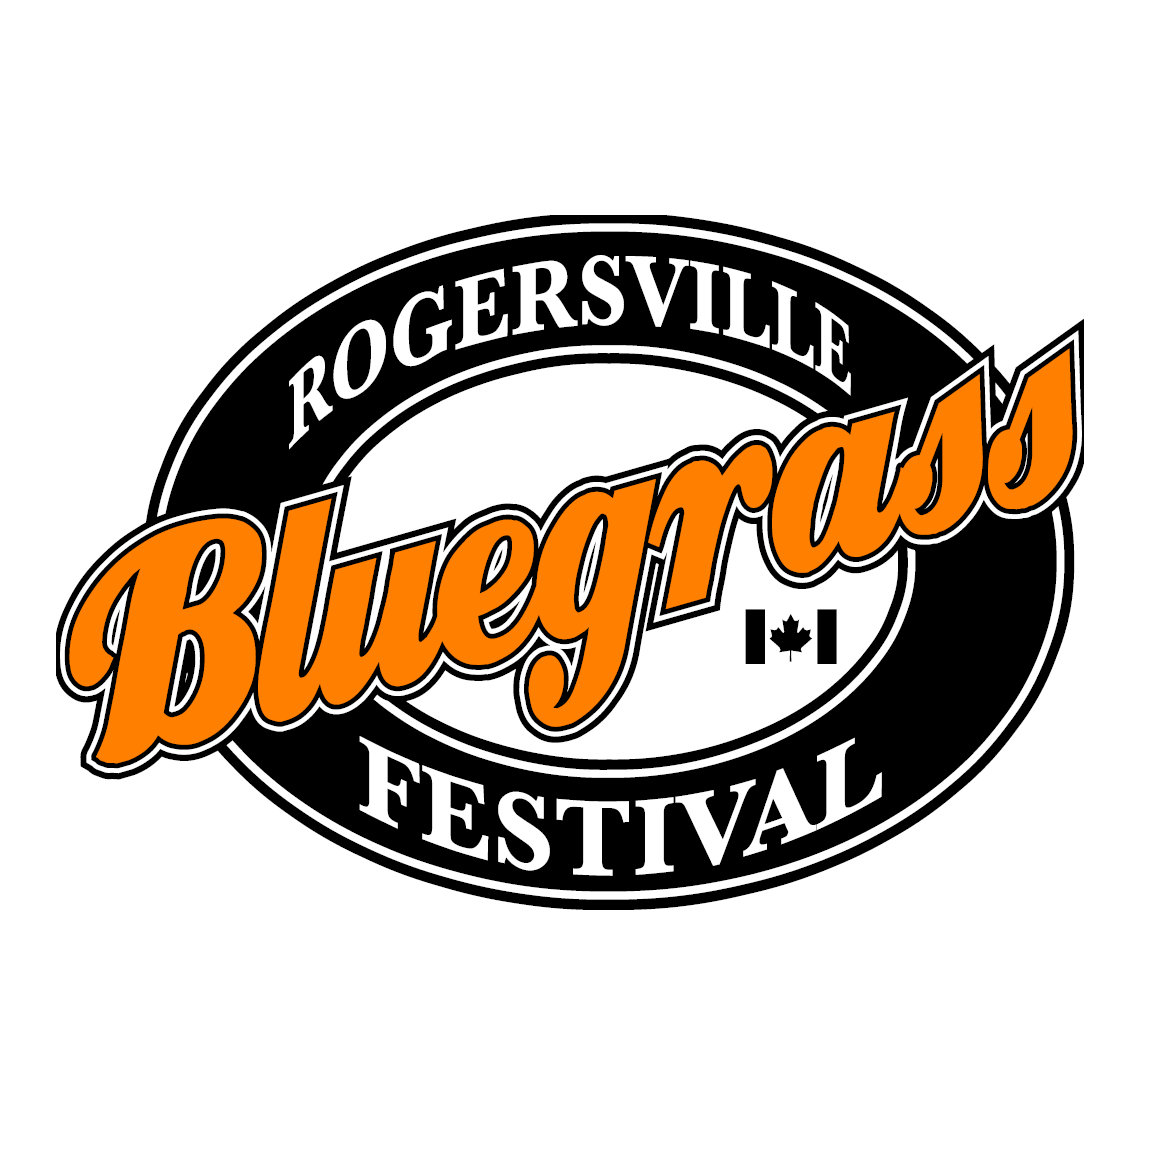 Rogersville Bluegrass Festival Committee